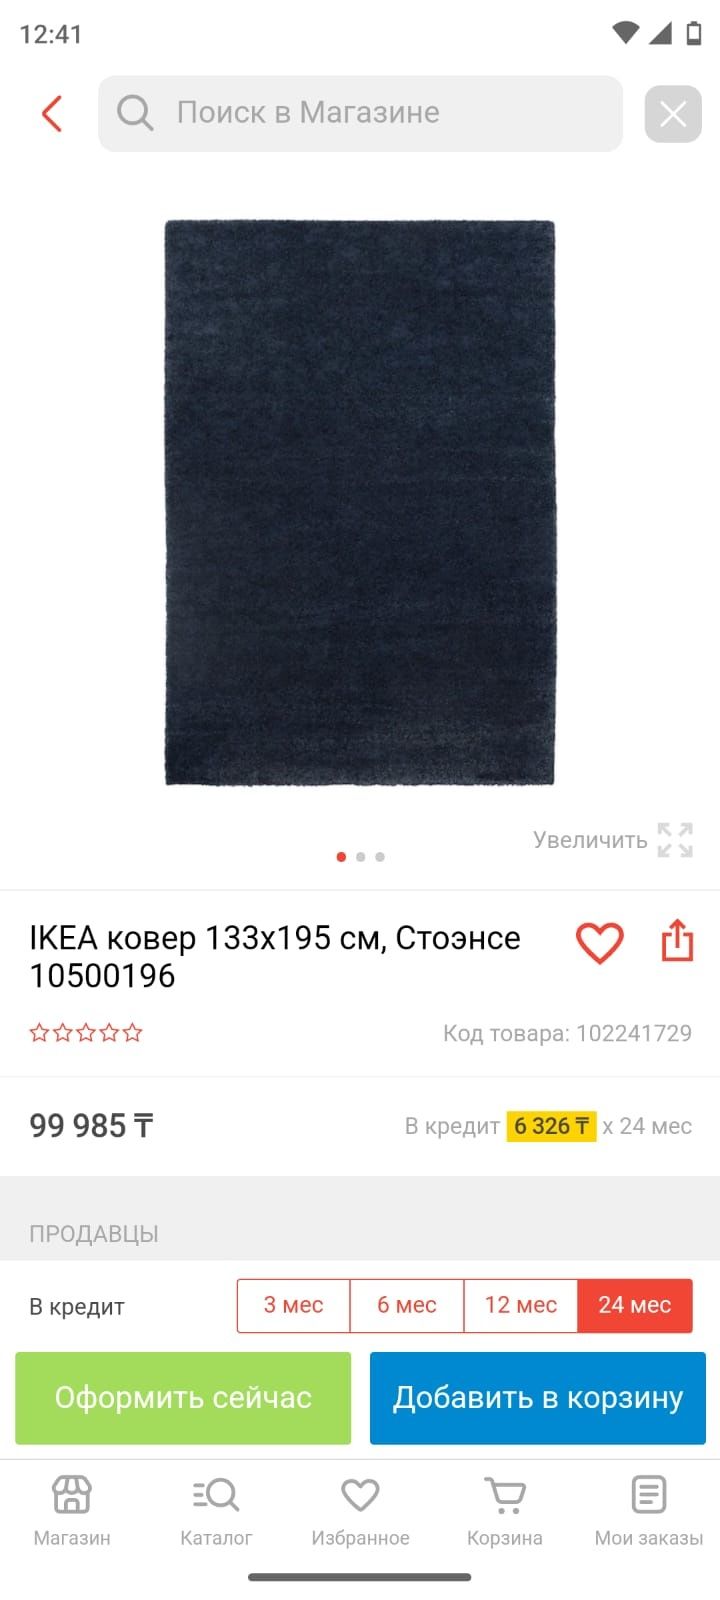 Серый ковер икея 195*133см пепельный цвет Ковер Икеа палас Ikea ковер